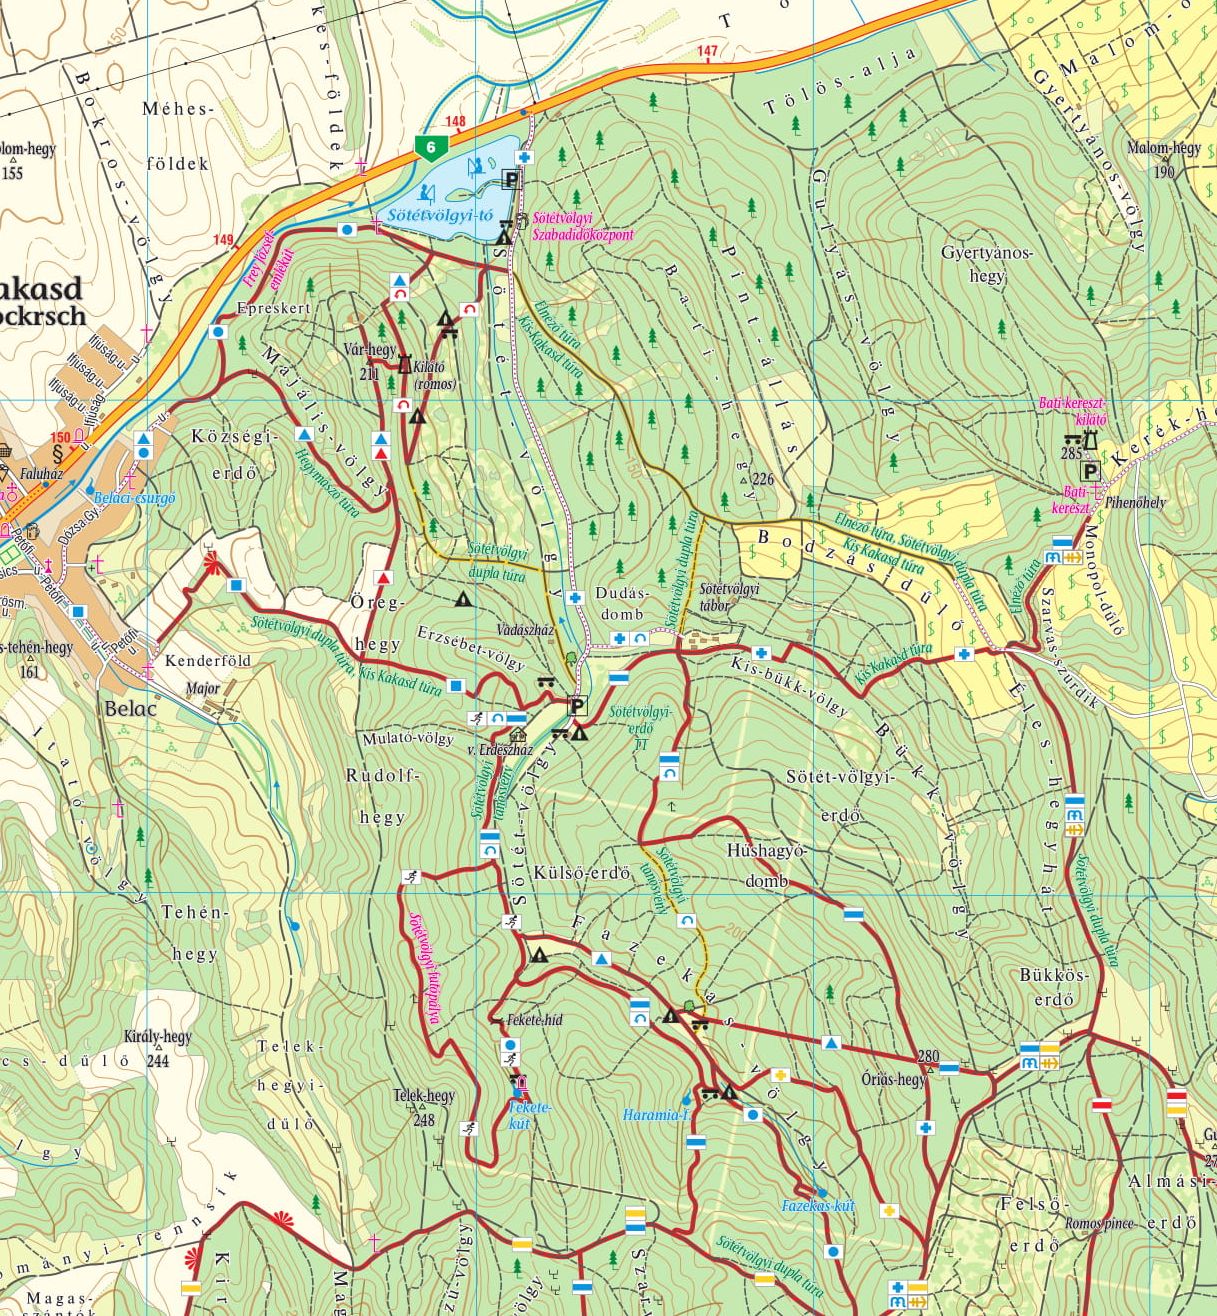 Szekszárd/Gemenc sample map: Sötétvölgy